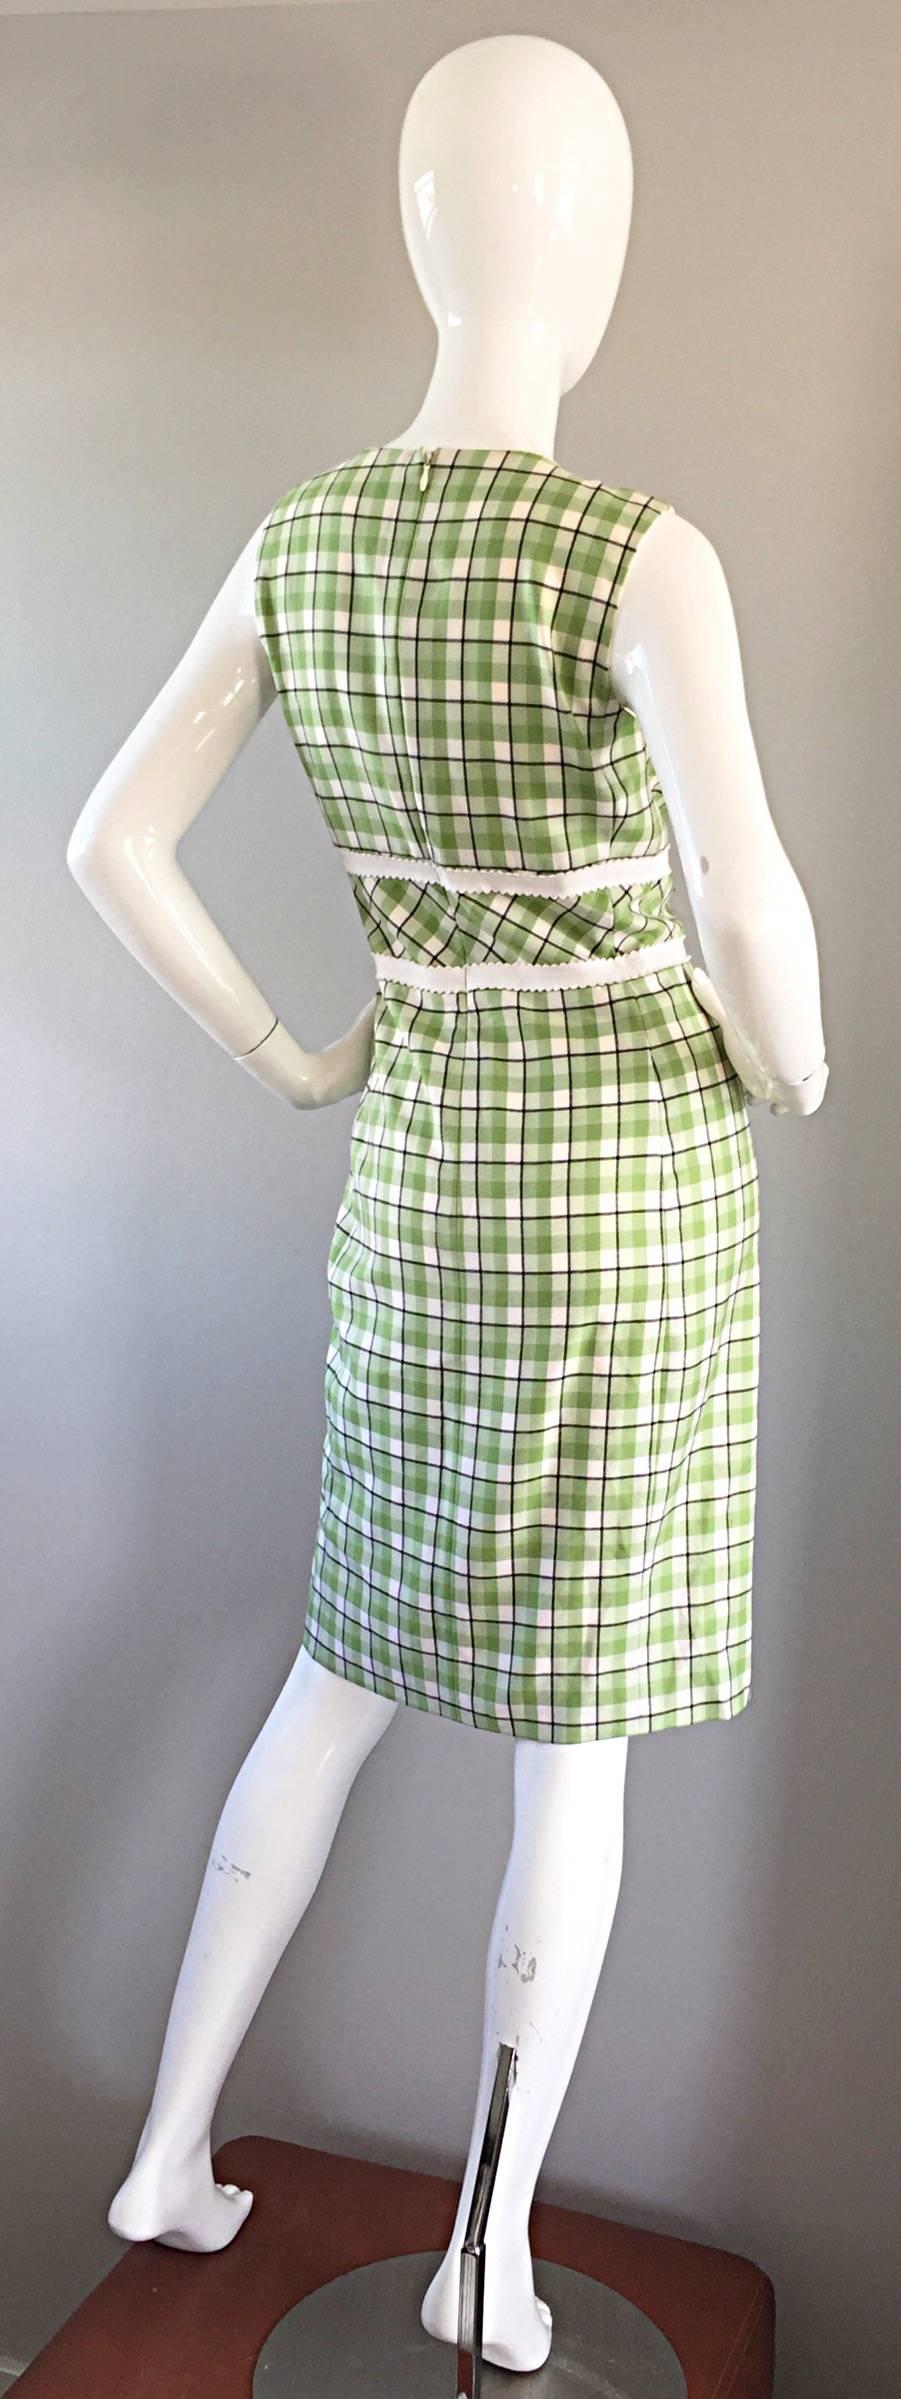 Women's Oscar de La Renta Size 6 / 8 Saks 5th Ave Green + White Checkered Plaid Dress  For Sale